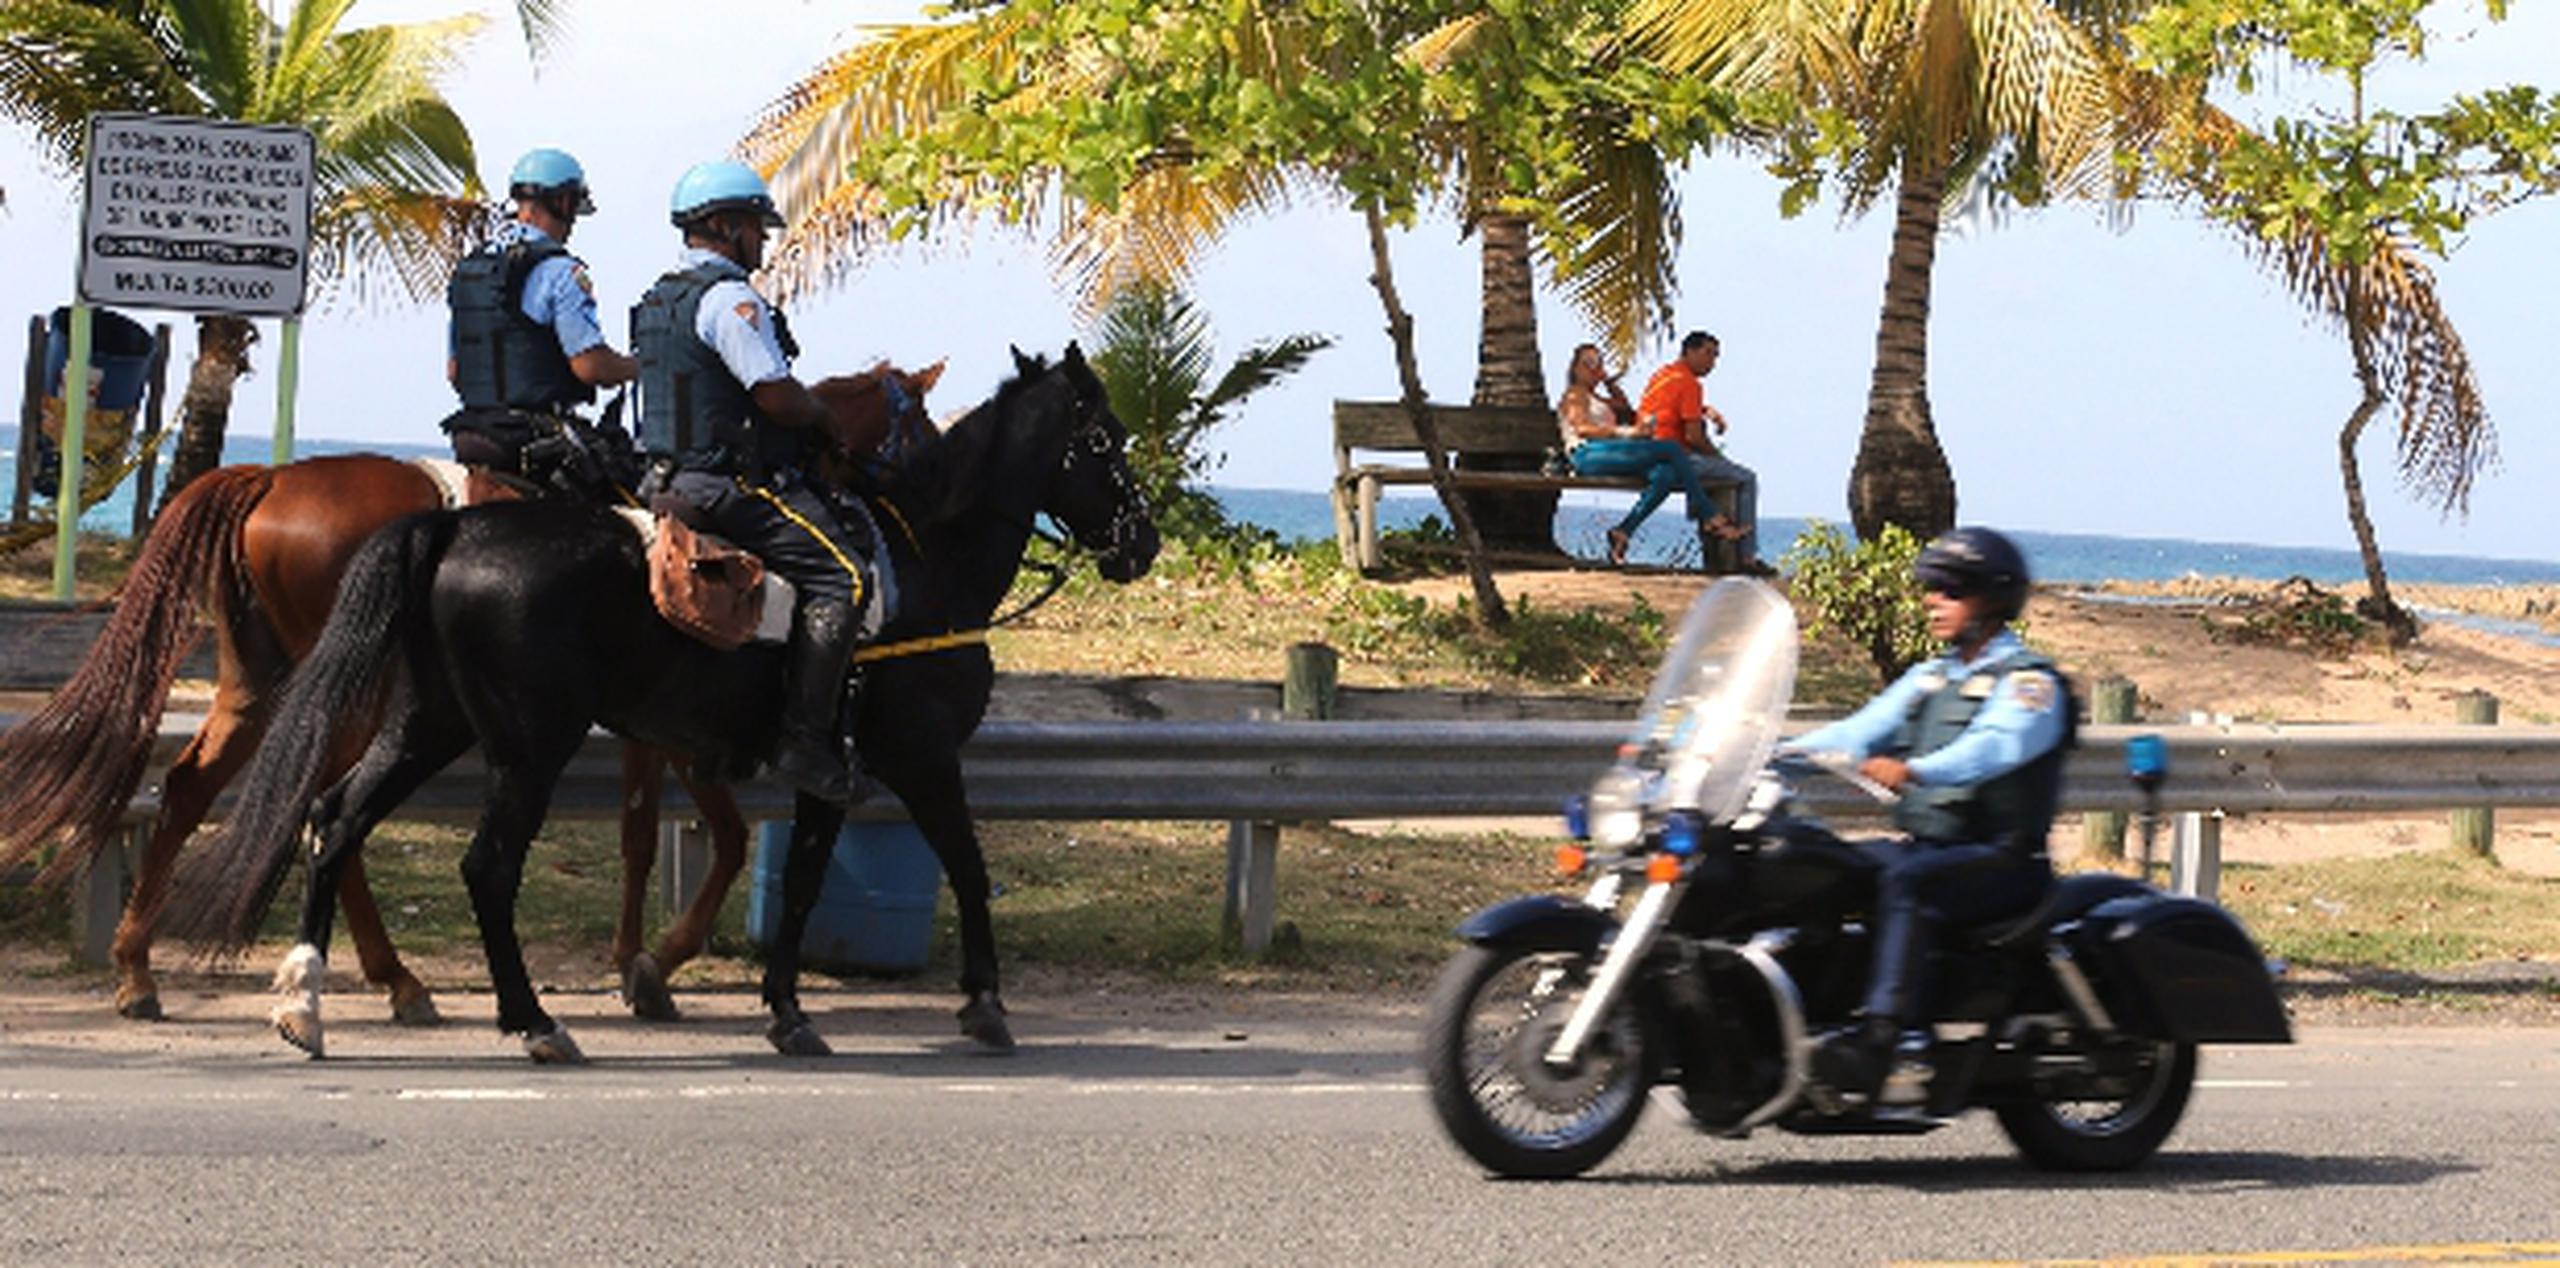 Al momento, se han destacado entre 50 y 60 agentes del orden público  para patrullar a lo largo del litoral  de Piñones en Loíza. (jose.reyes@gfrmedia.com)